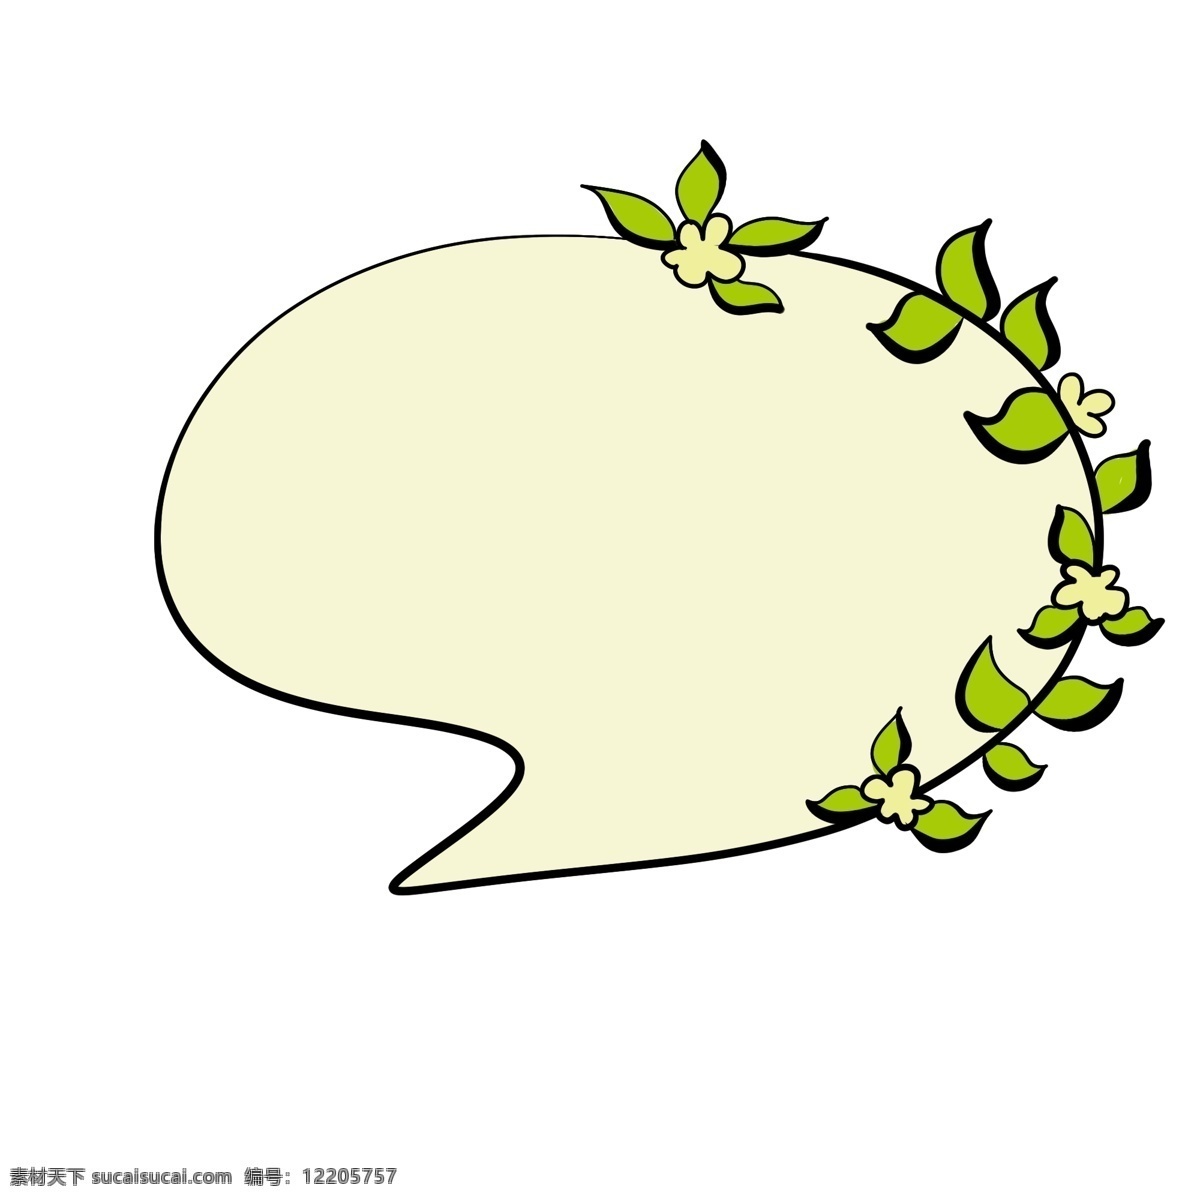 淡绿色 花边 对话框 绿色 叶子 花朵 嫩黄色 手绘 卡通 好看 装饰 清晰 明快色调 实用 图案